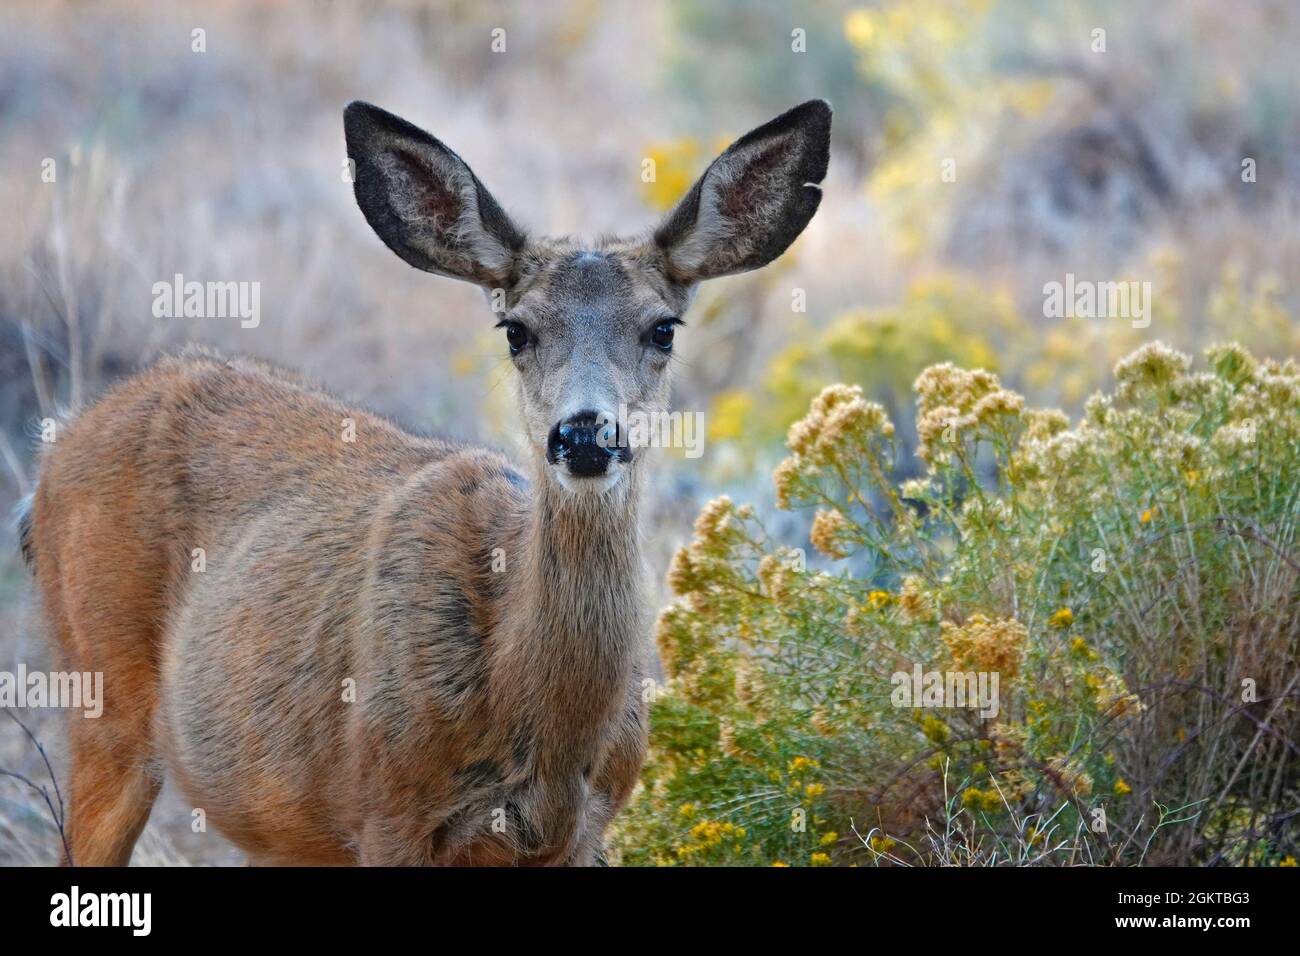 An adult mule deer doe, female, browsing in a field in autumn near Bend, Oregon. Stock Photo